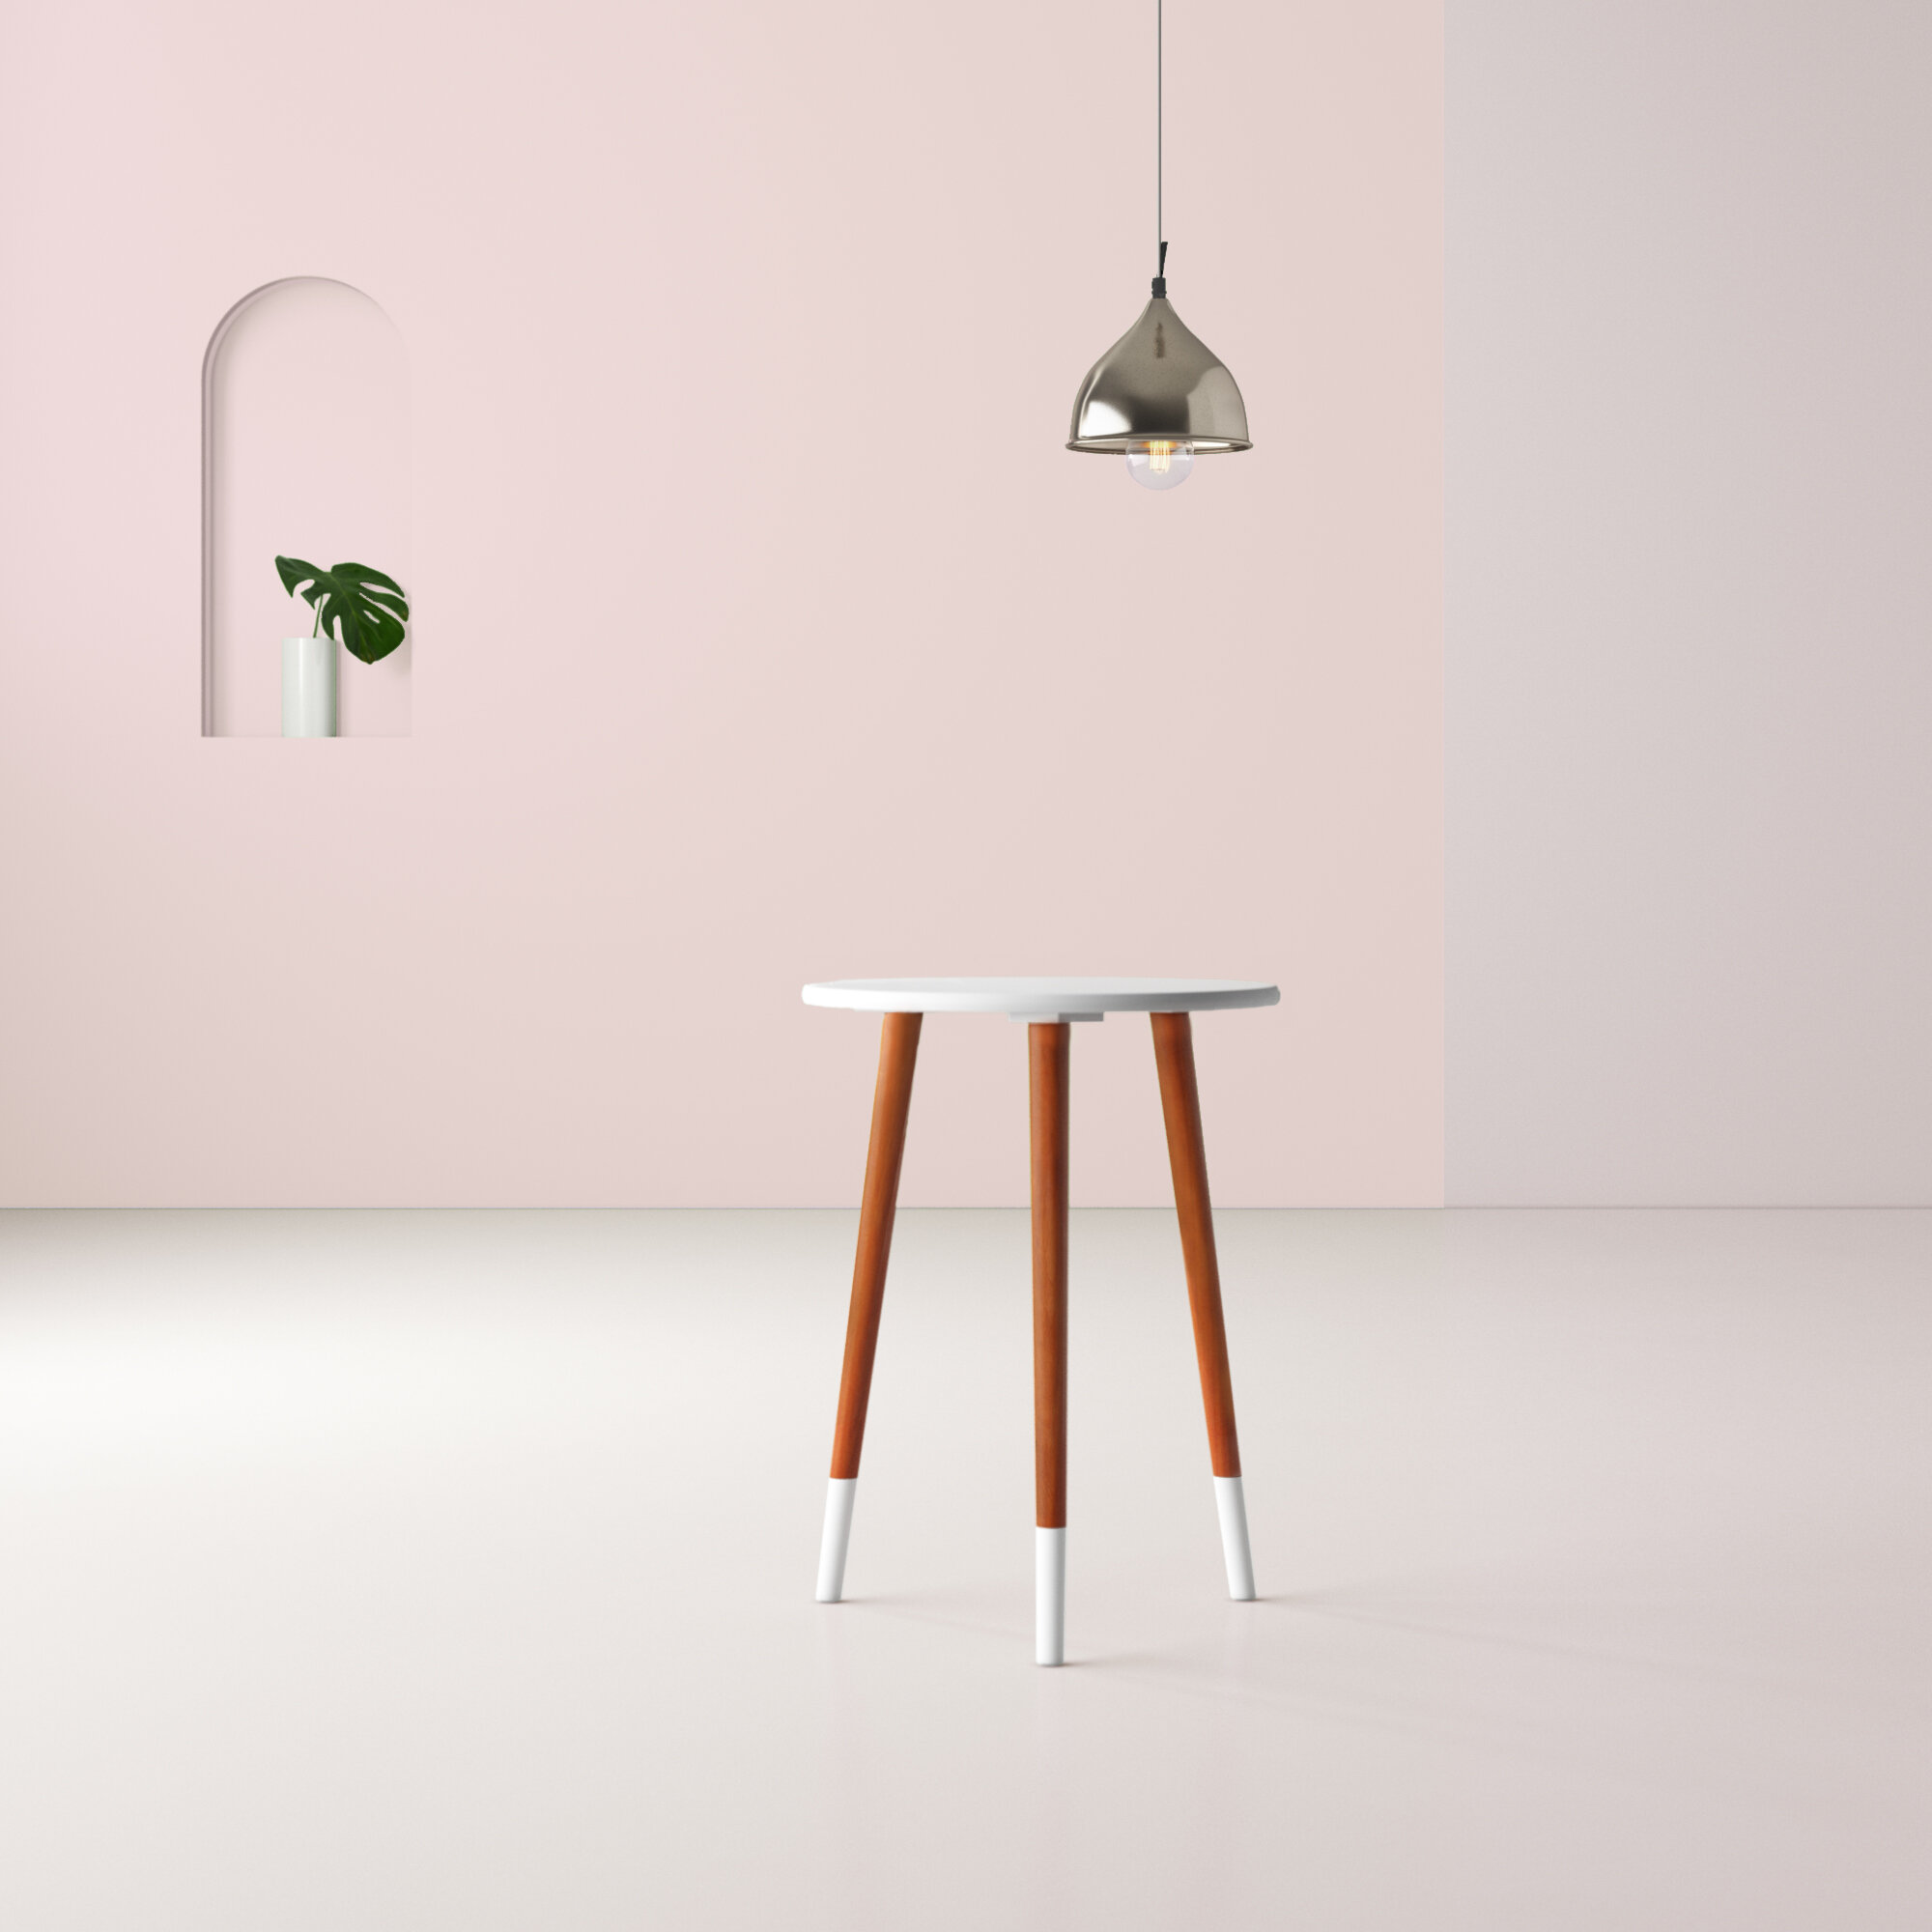 3 legged stool analogy